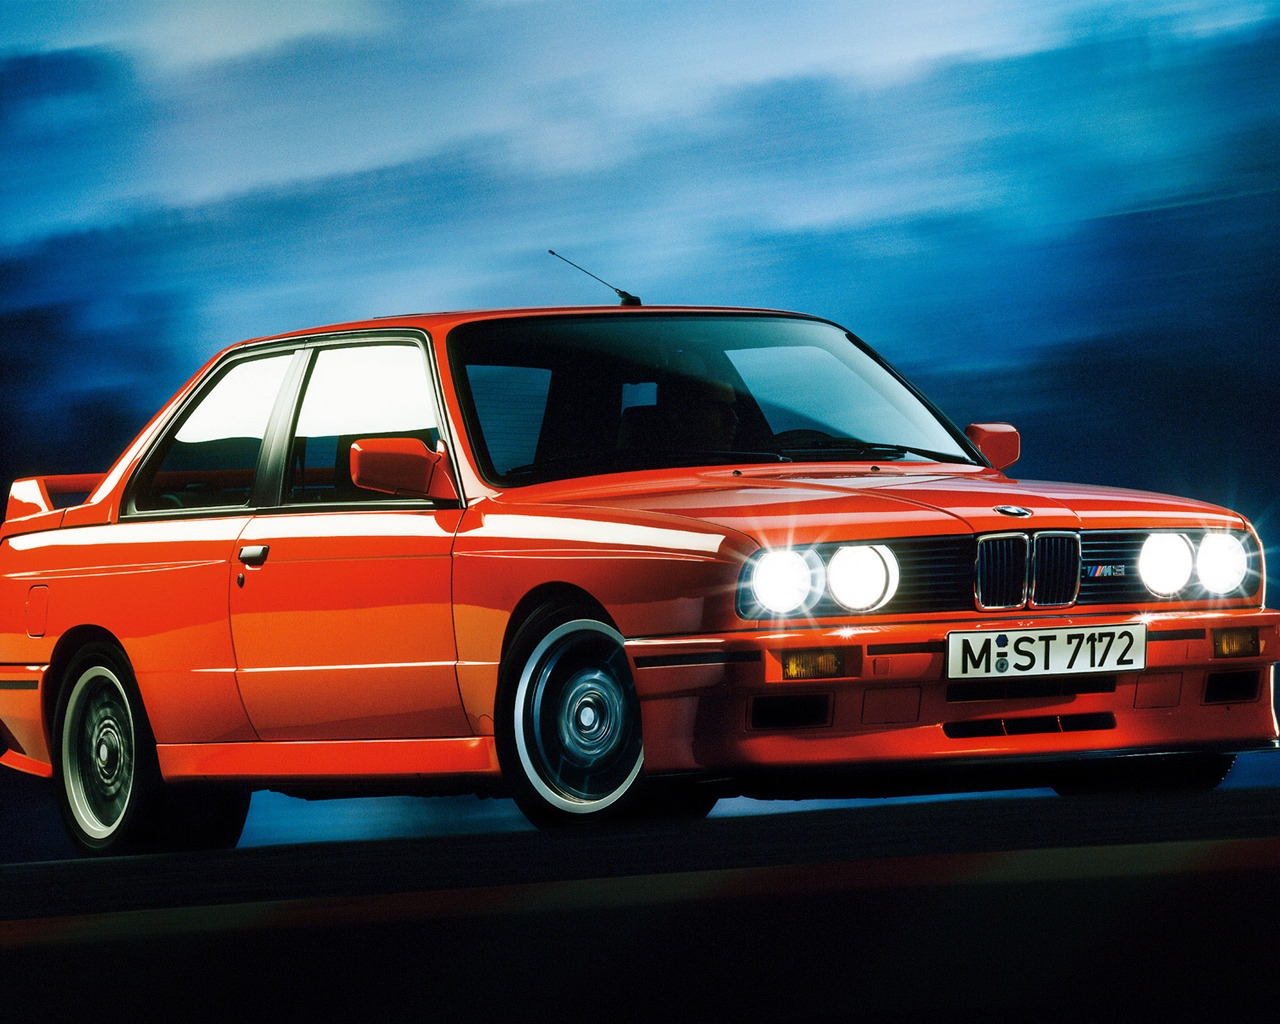 BMW M3 Sport Evolution E30 for 1280 x 1024 resolution